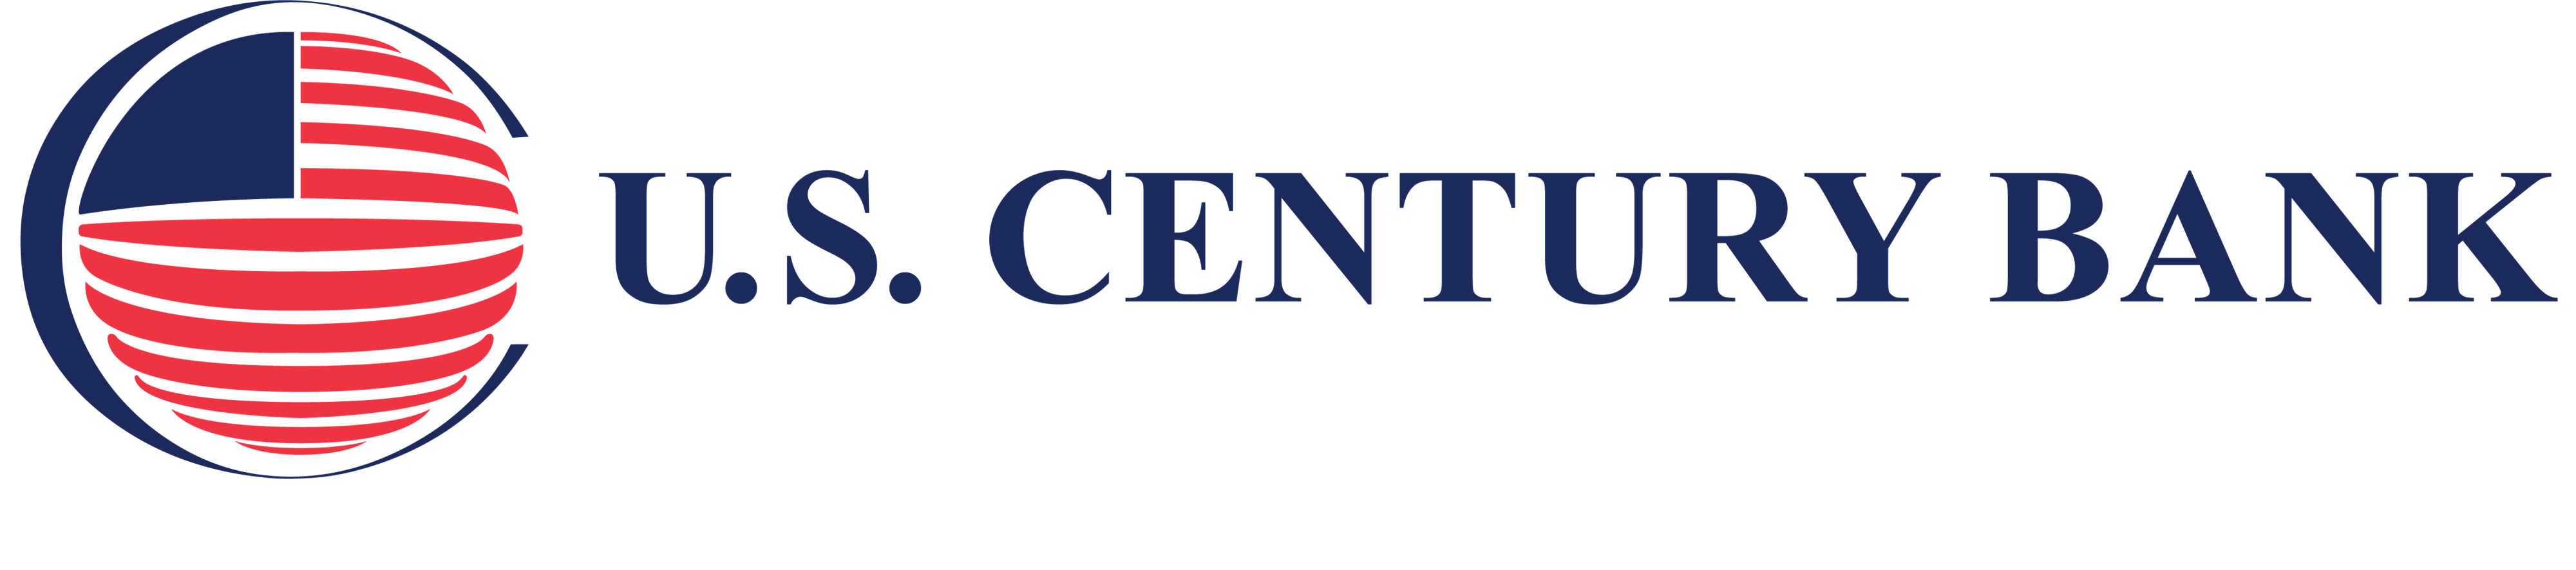 US Century Bank Logo Vector 2021_Color copy 1.png